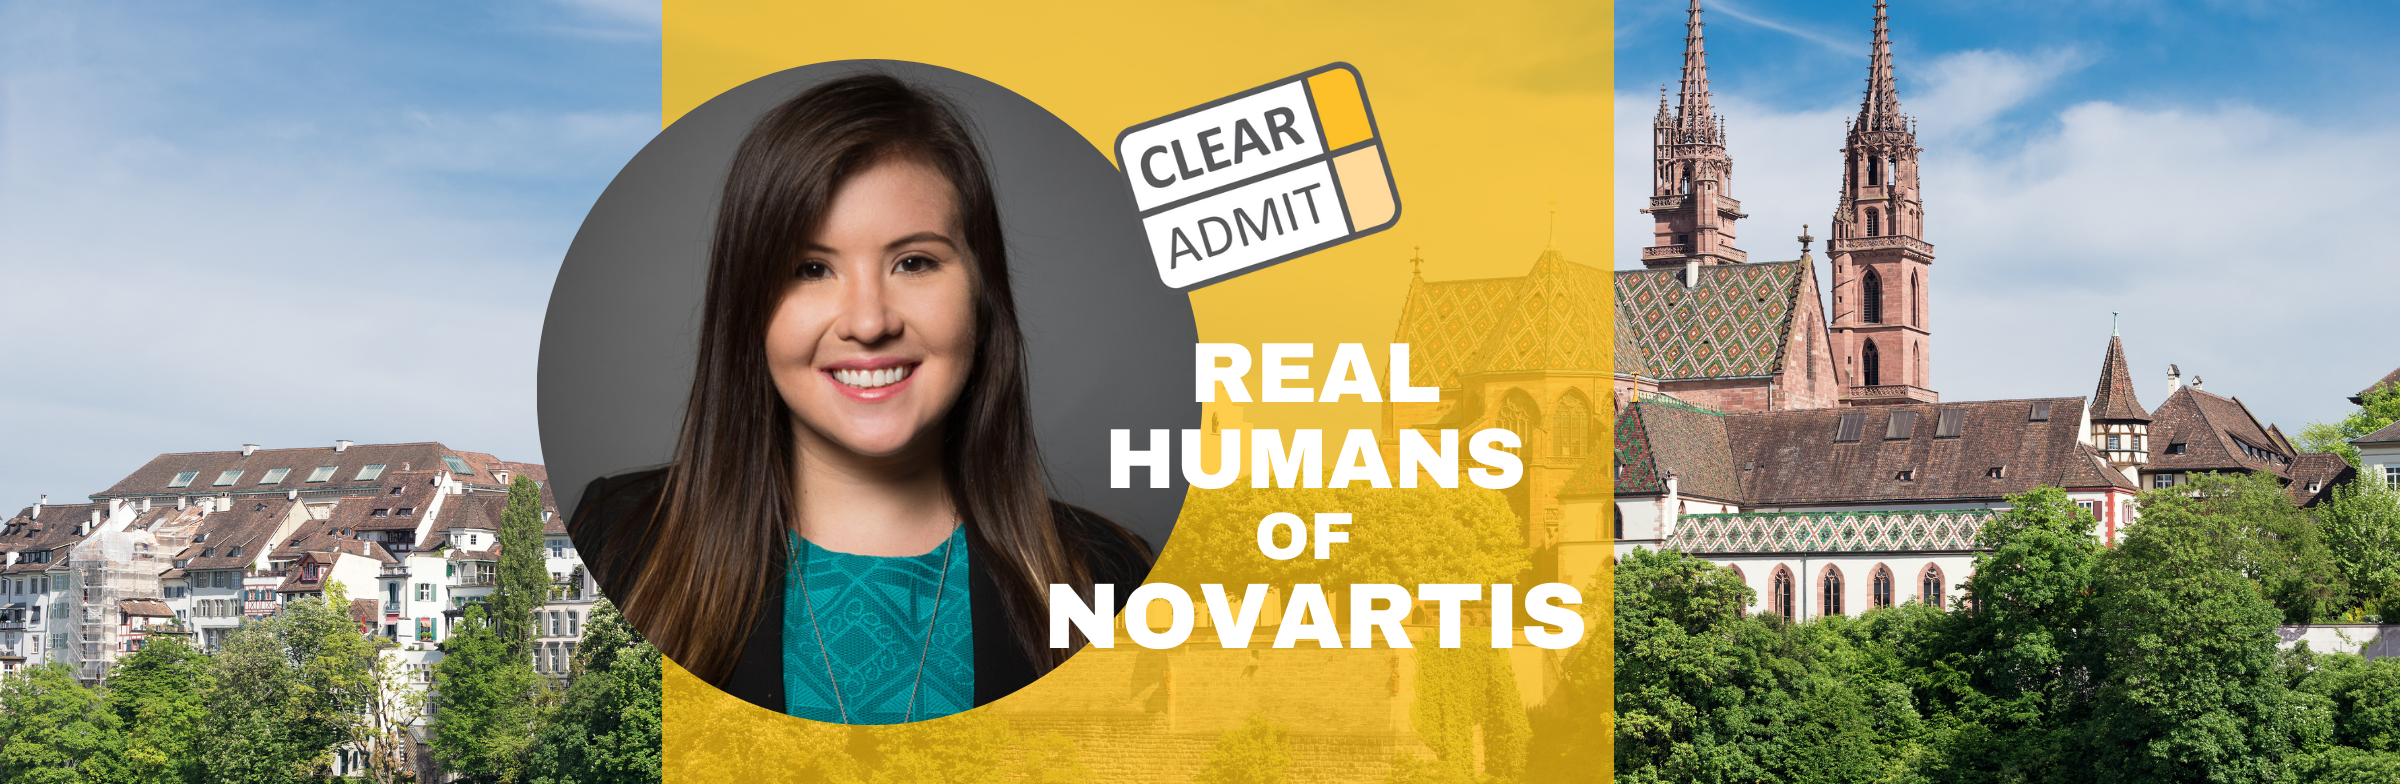 Image for Real Humans of Novartis: Fernanda Carranza, Cornell Johnson ‘19, Finance Development Program Associate